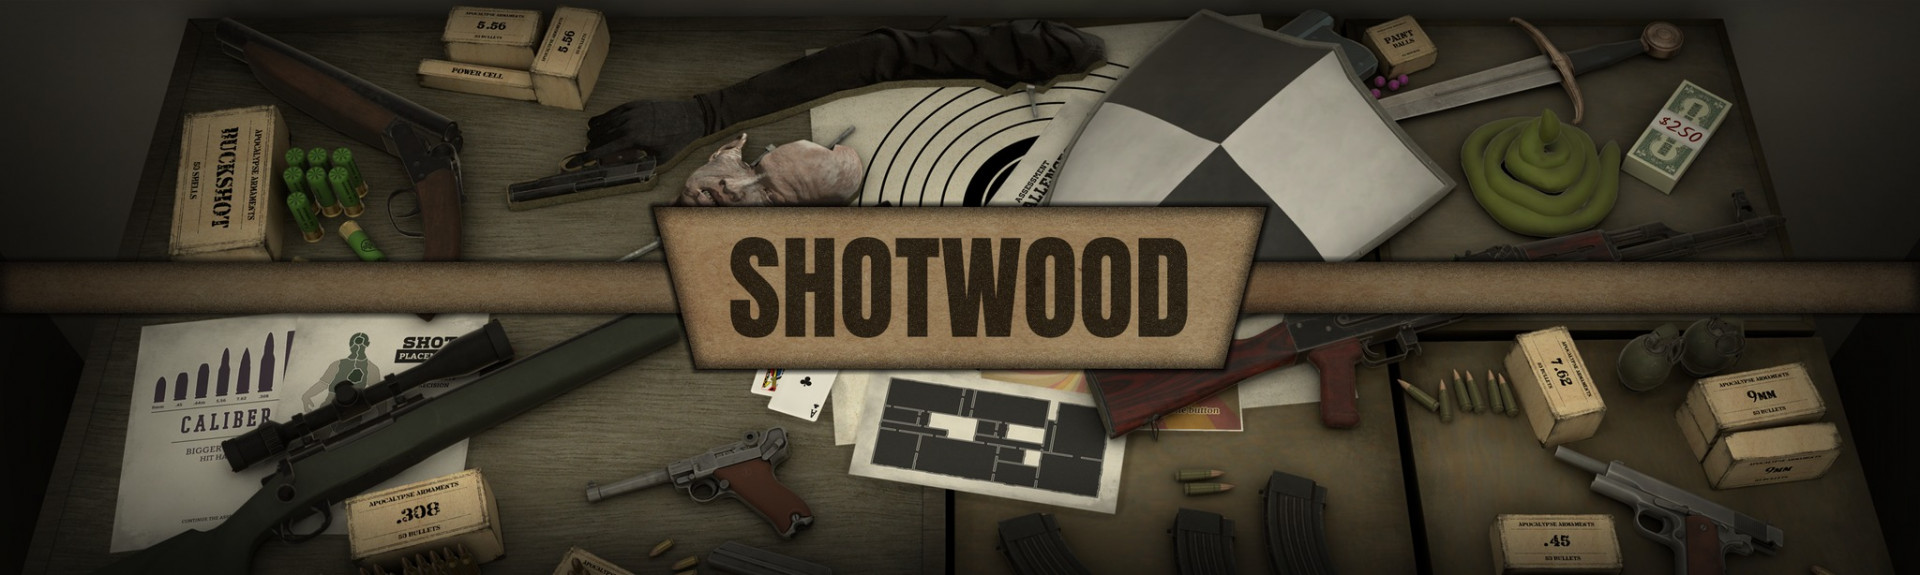 Shotwood